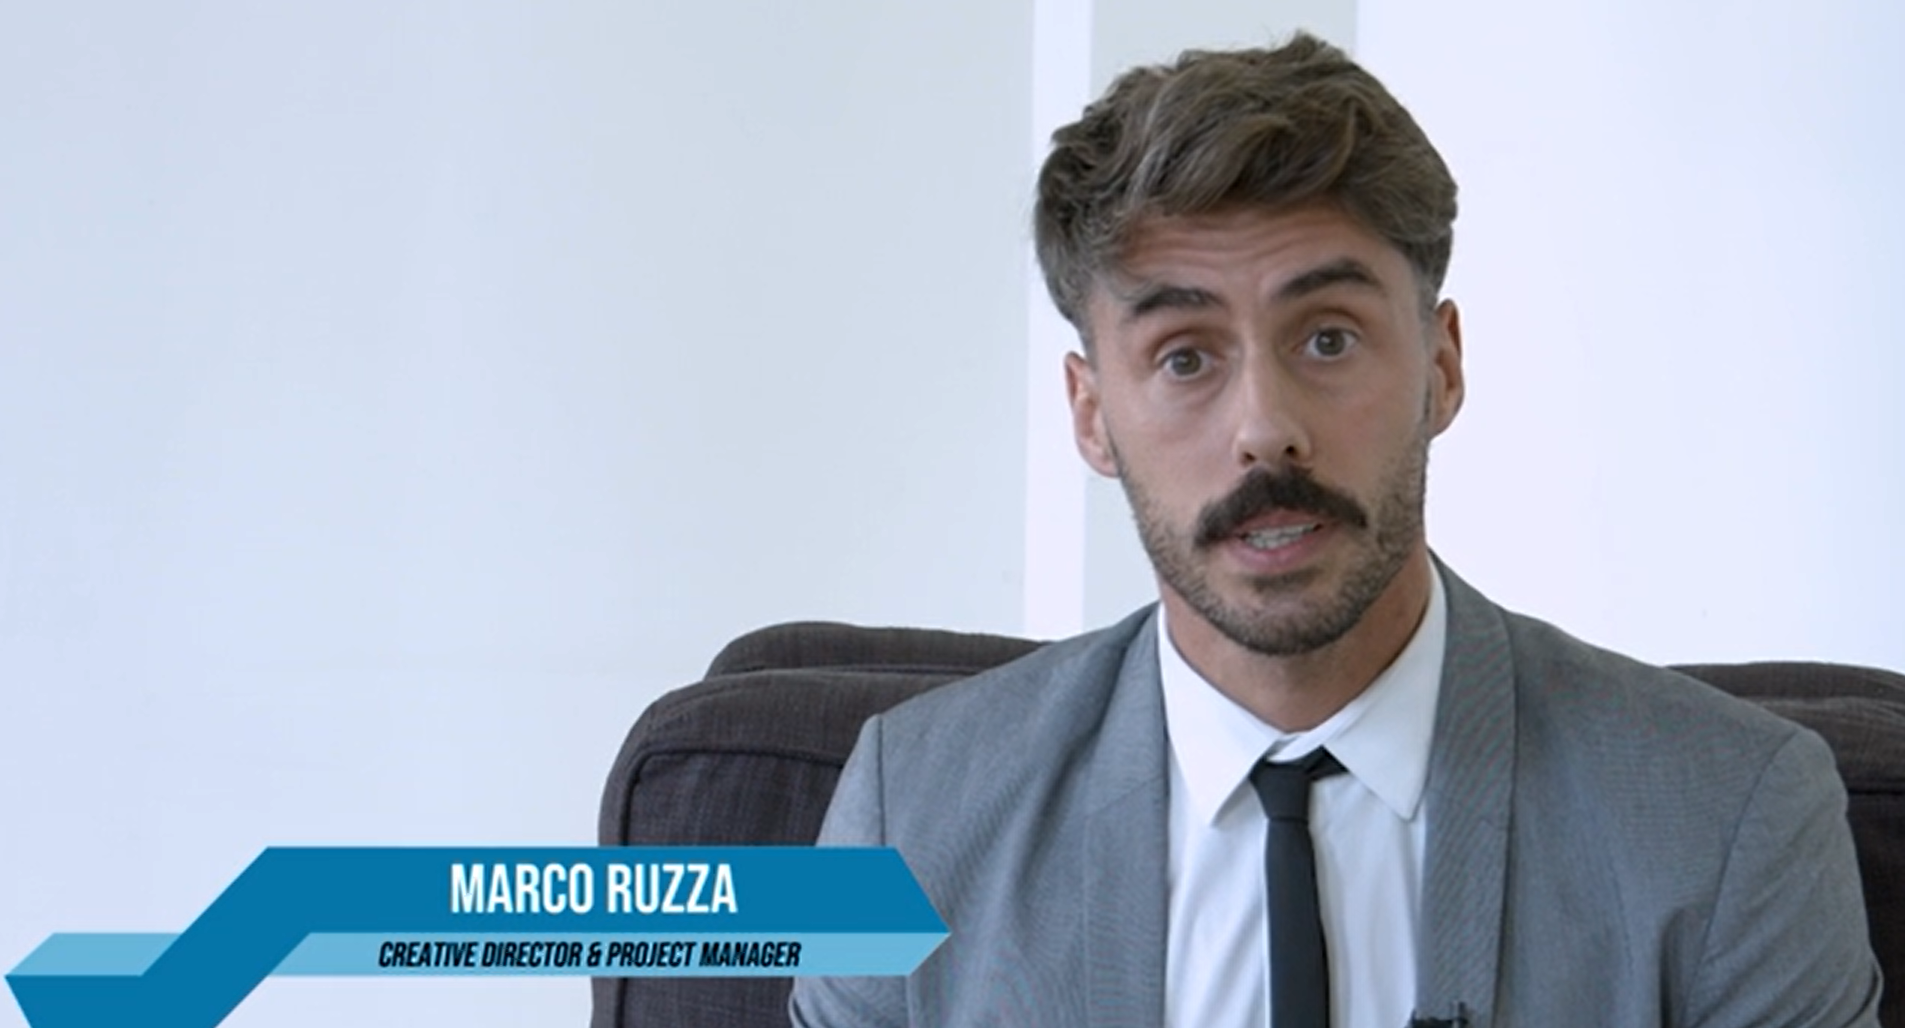 Marco Ruzza